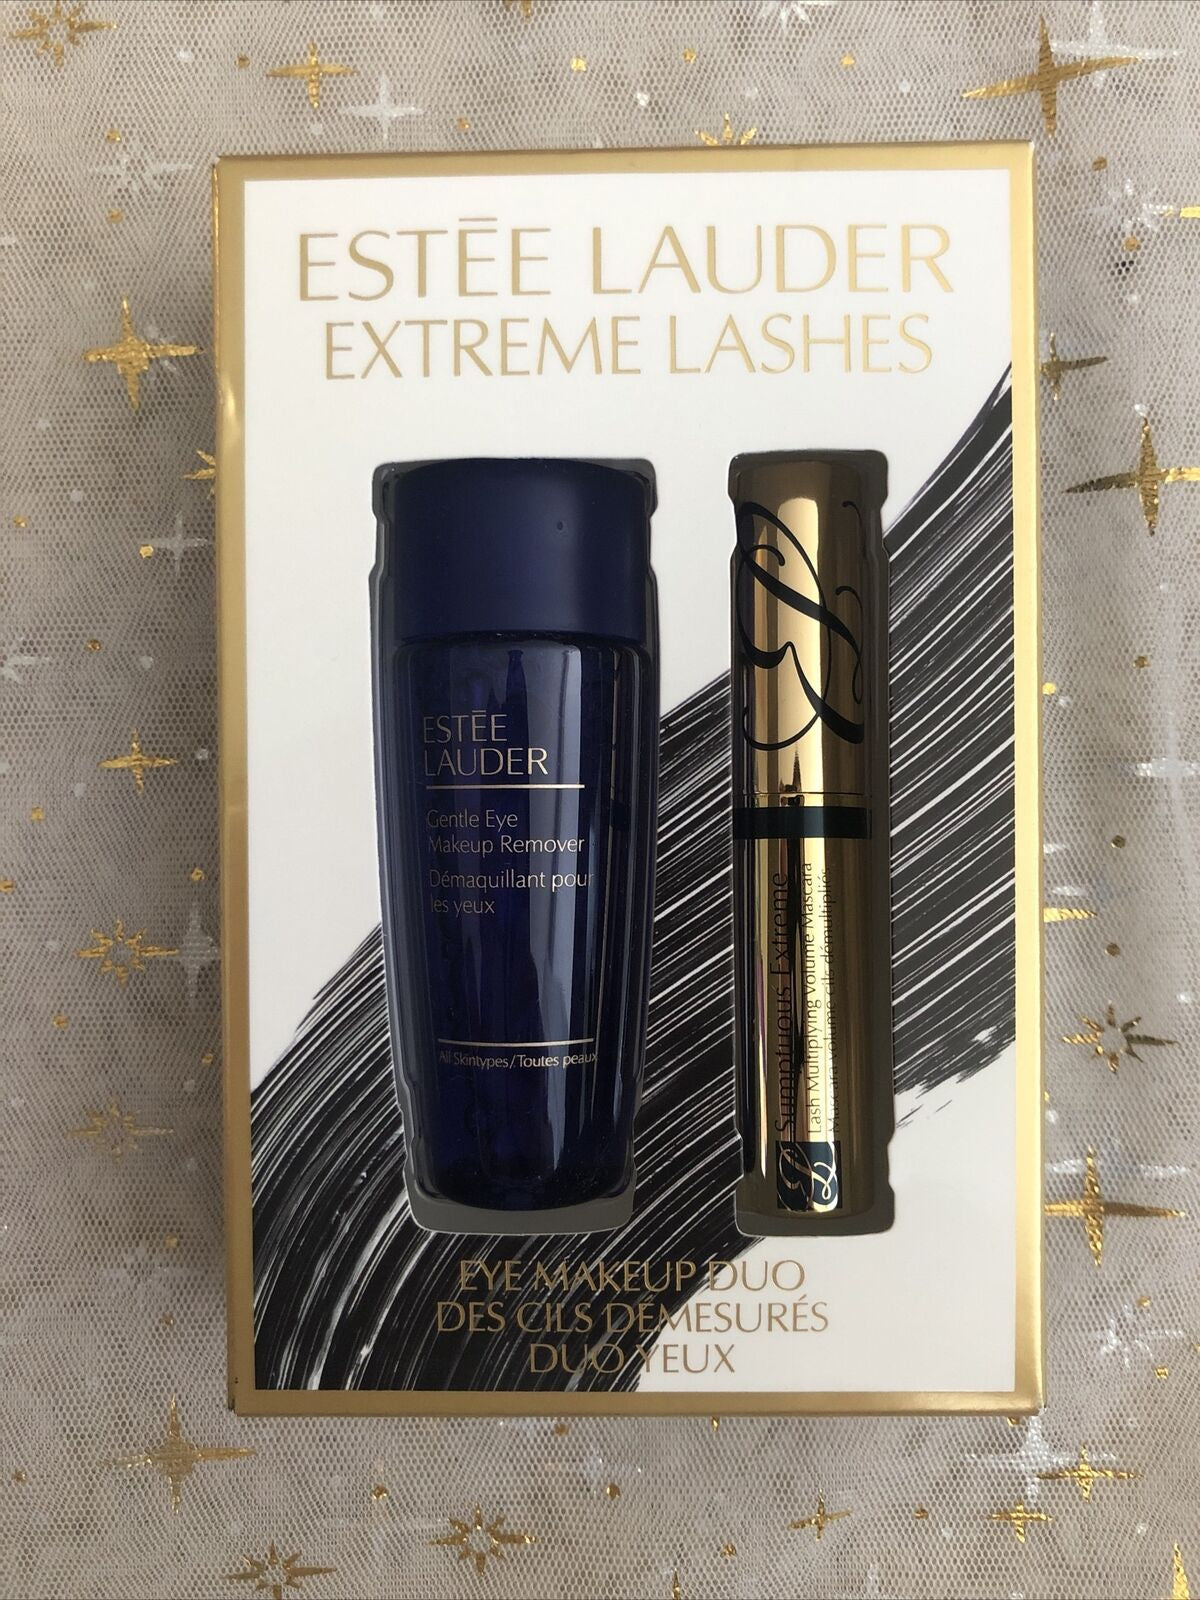 Estee Lauder Extreme Lashes Eye Makeup Duo Mini Set - MEDUSÉ